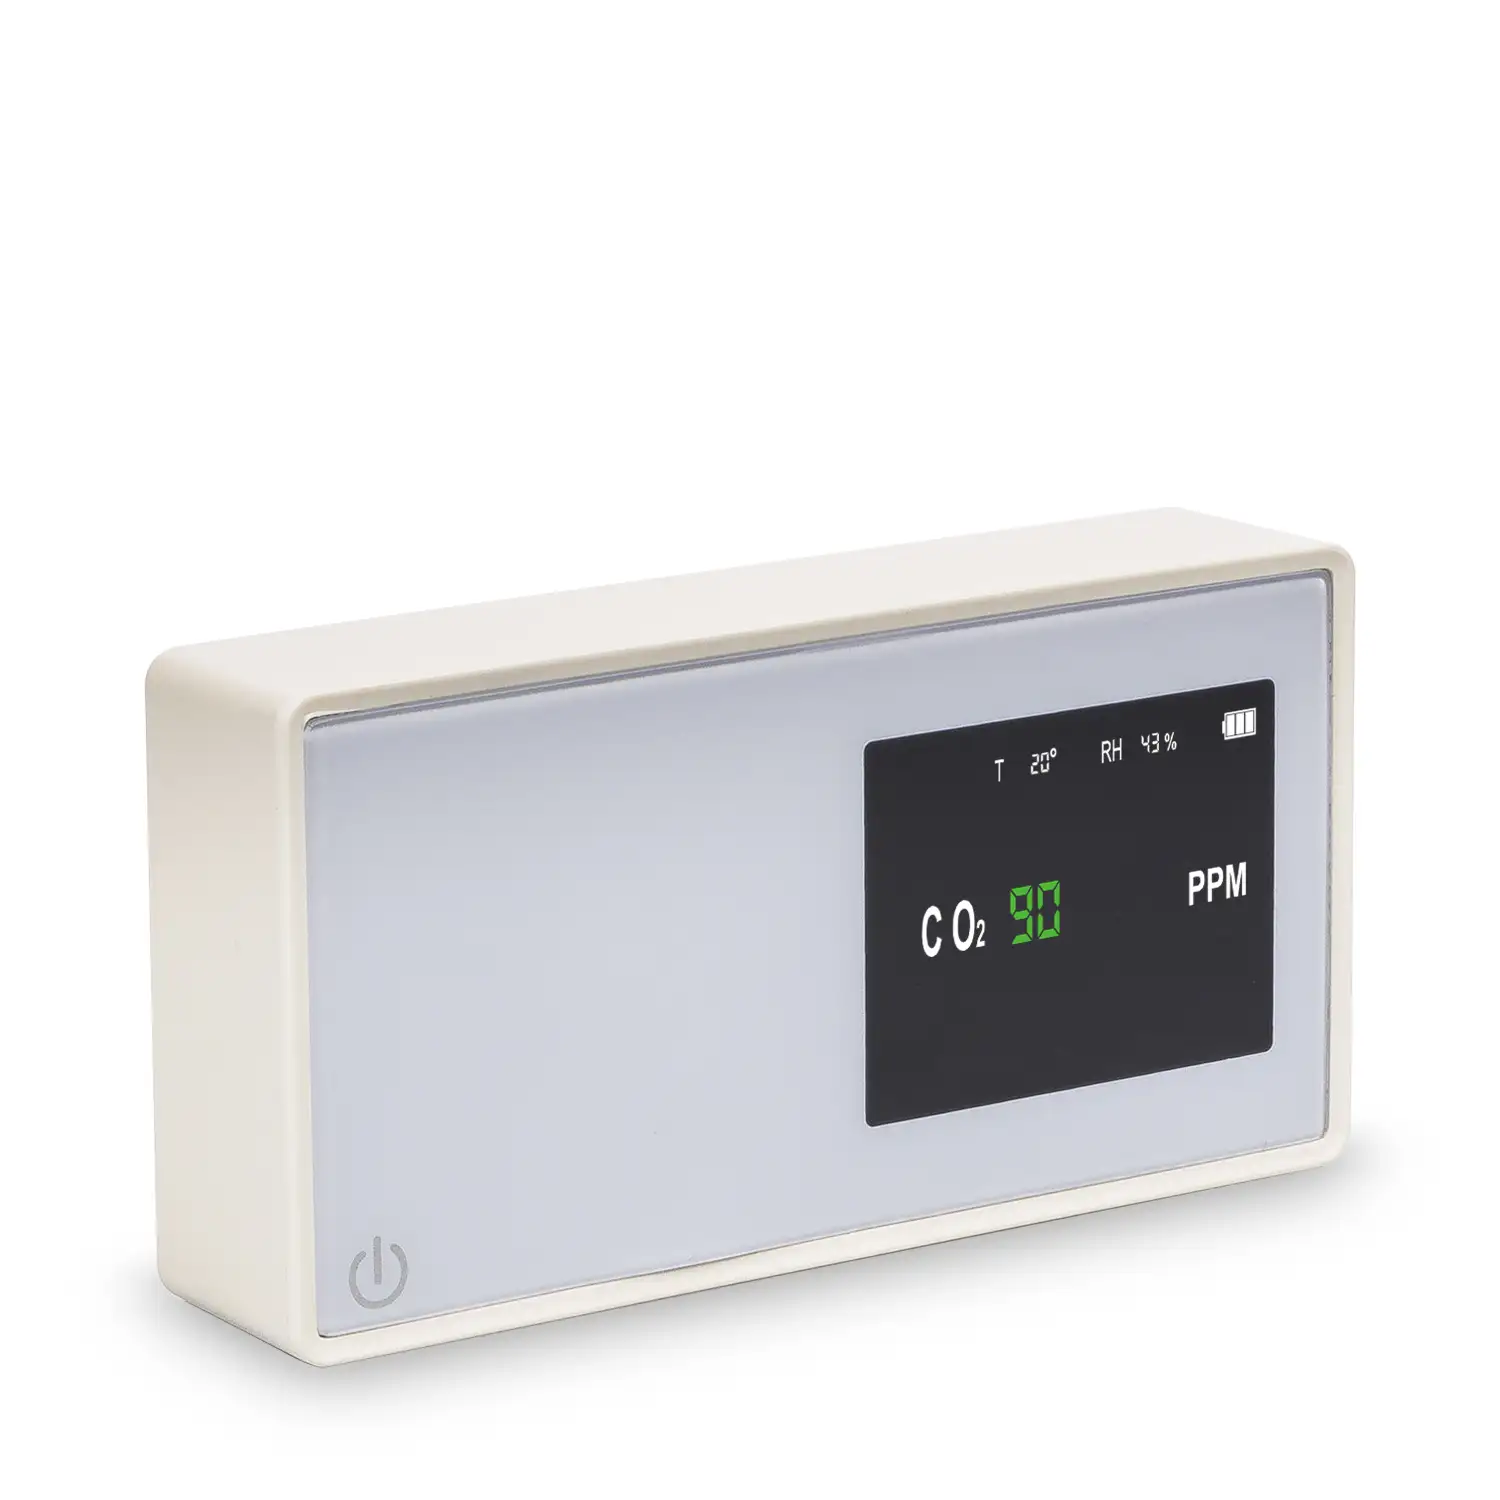 Detector portátil de calidad del aire con sensor de CO2, temperatura y humedad.